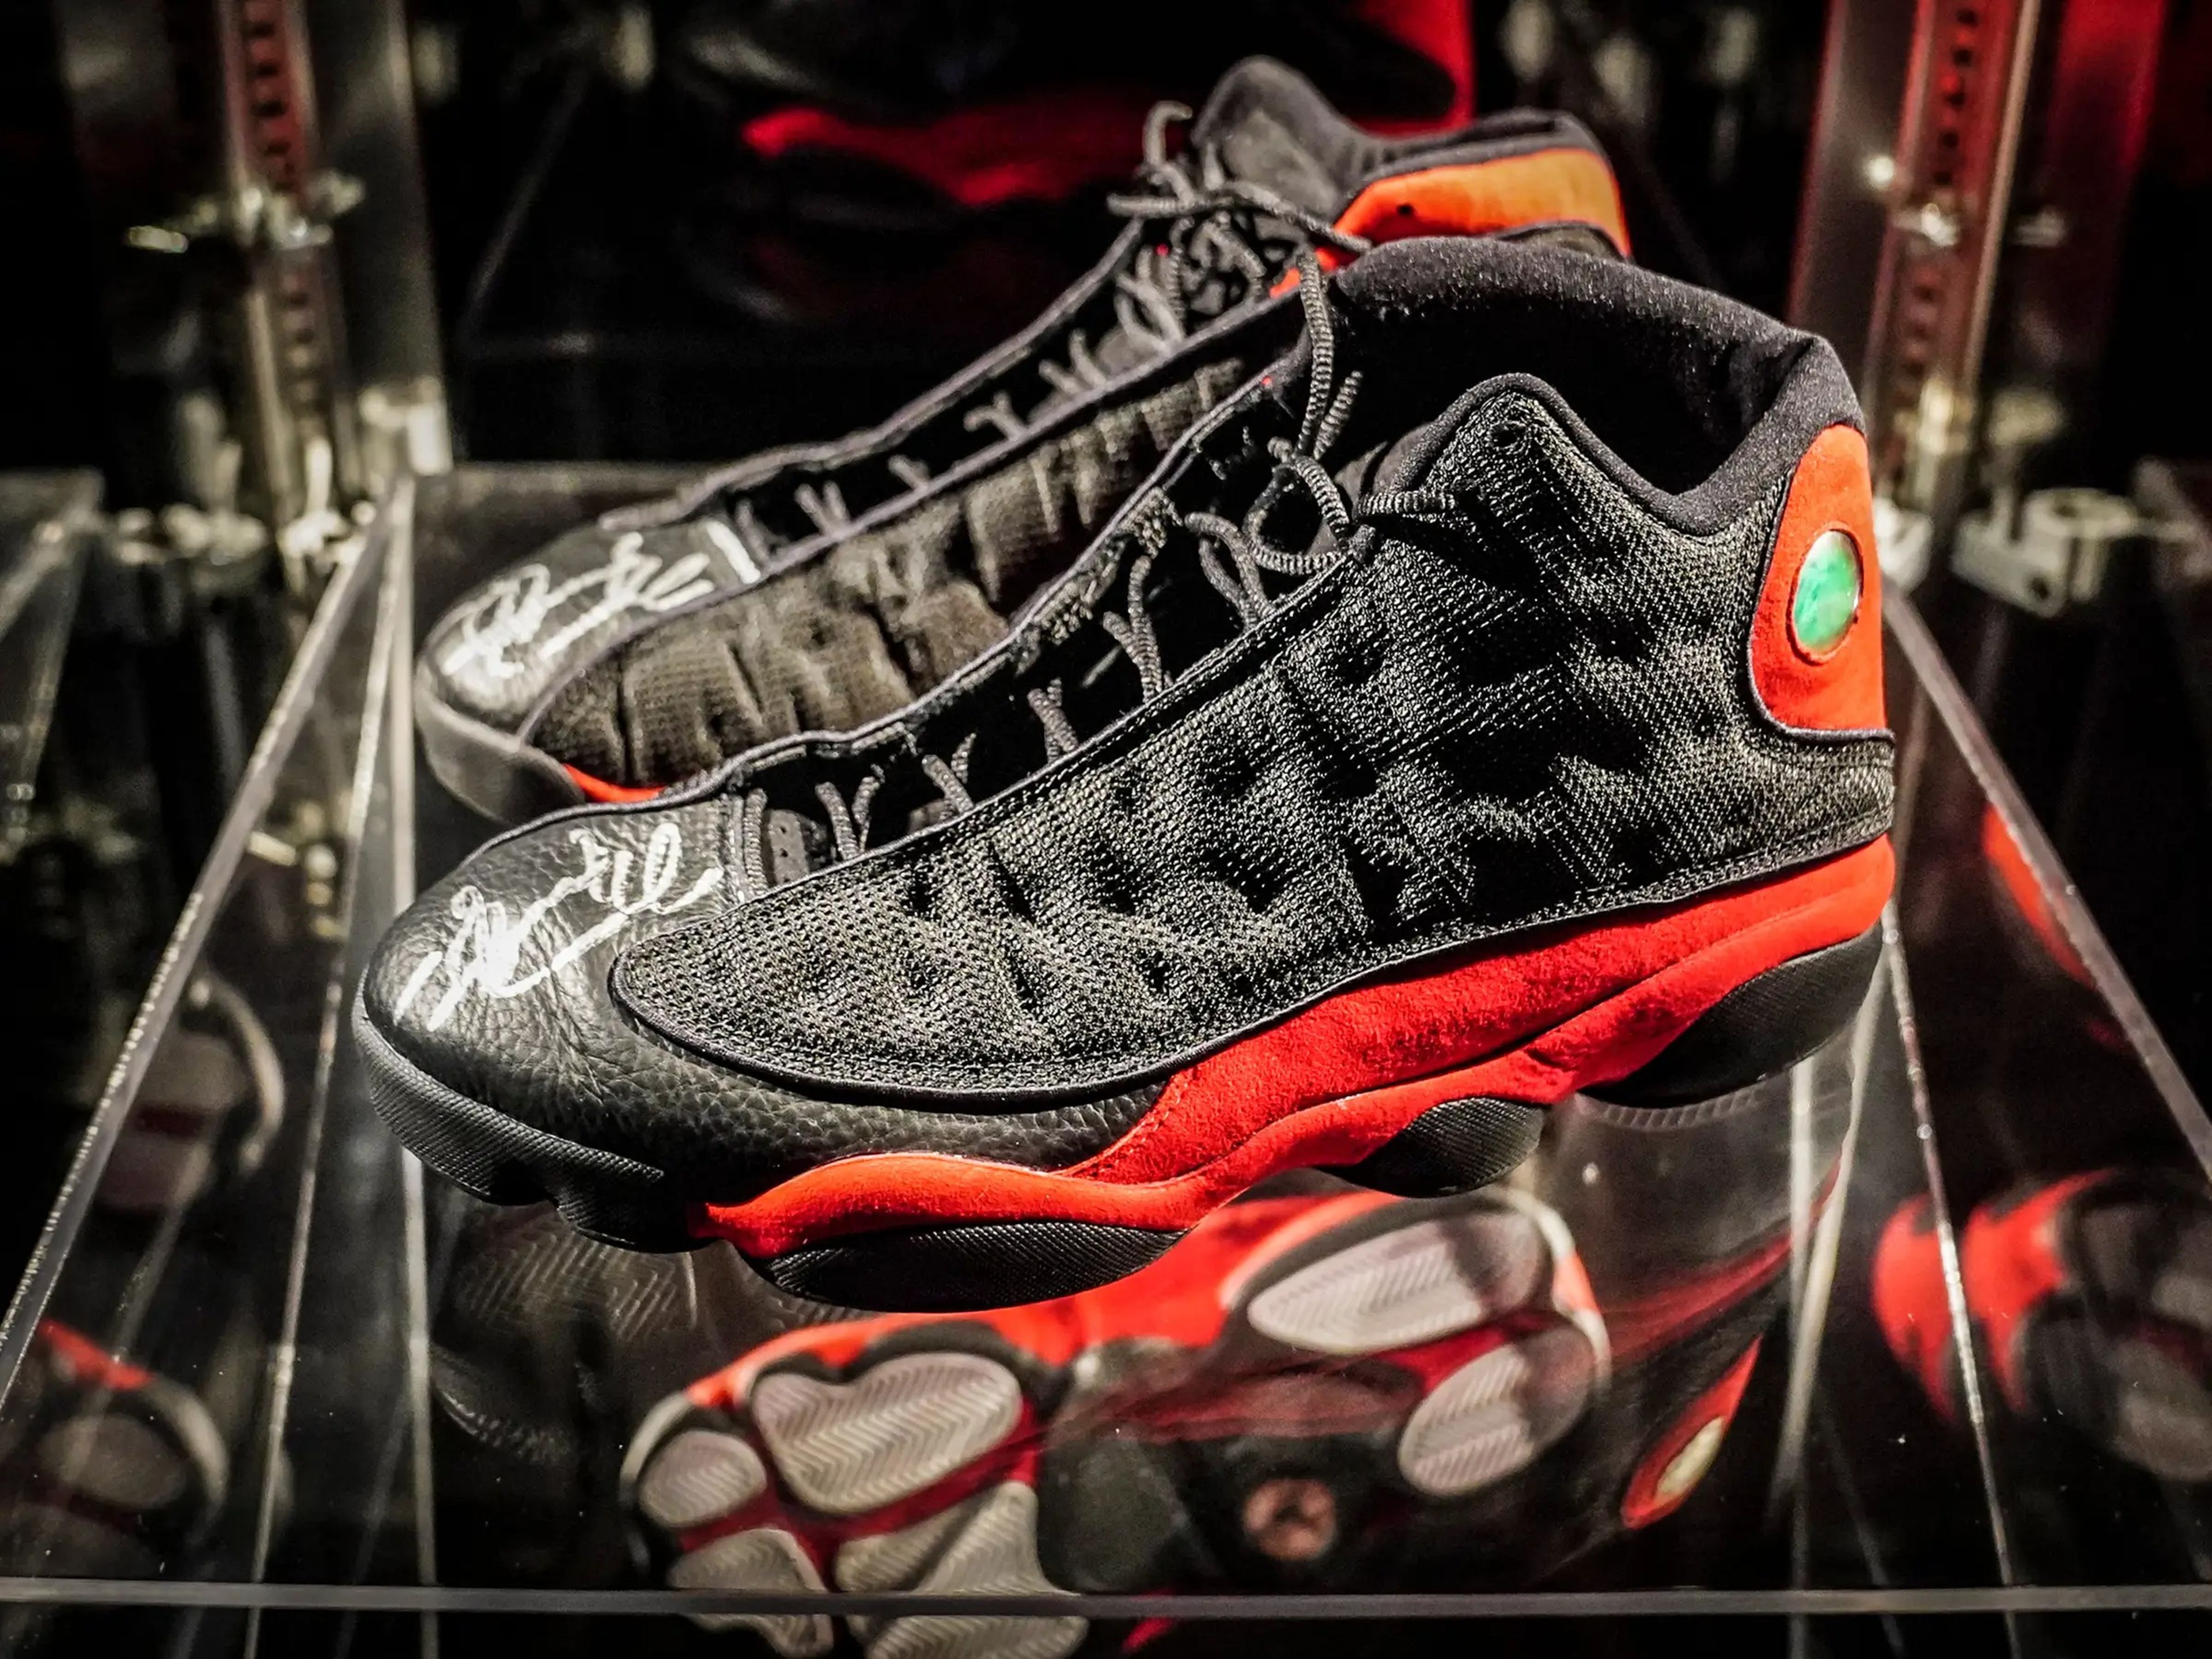 Las zapatillas que Michael Jordan llevó durante las finales de la NBA de 1998 se vendieron por 2,2 millones de dólares, estableciendo un nuevo récord mundial.